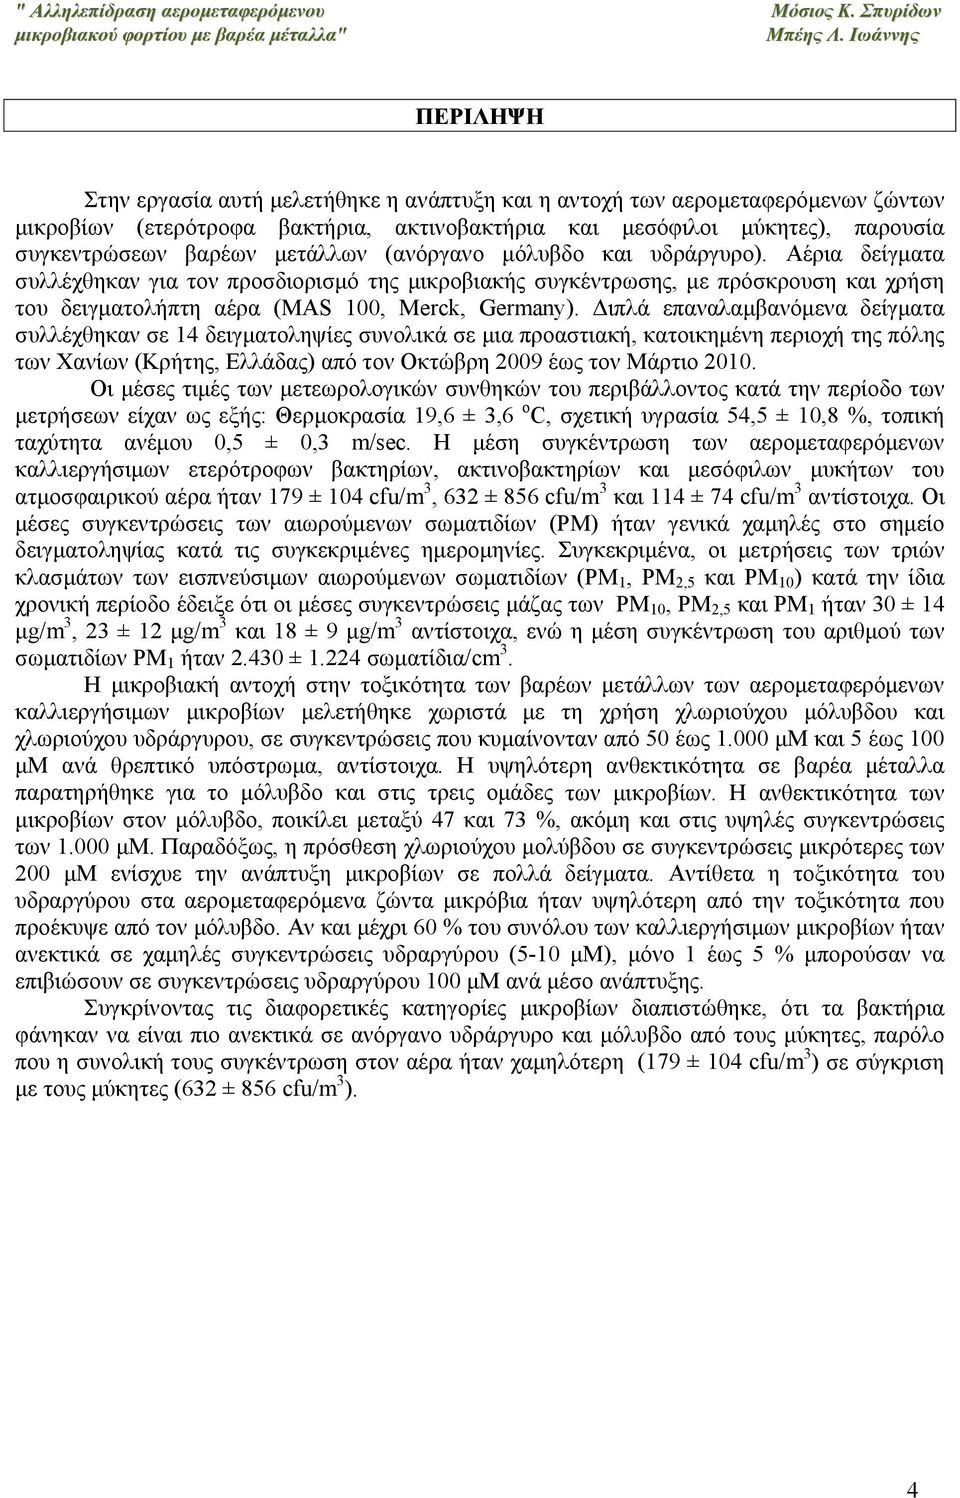 Διπλά επαναλαμβανόμενα δείγματα συλλέχθηκαν σε 14 δειγματοληψίες συνολικά σε μια προαστιακή, κατοικημένη περιοχή της πόλης των Χανίων (Κρήτης, Ελλάδας) από τον Οκτώβρη 2009 έως τον Μάρτιο 2010.